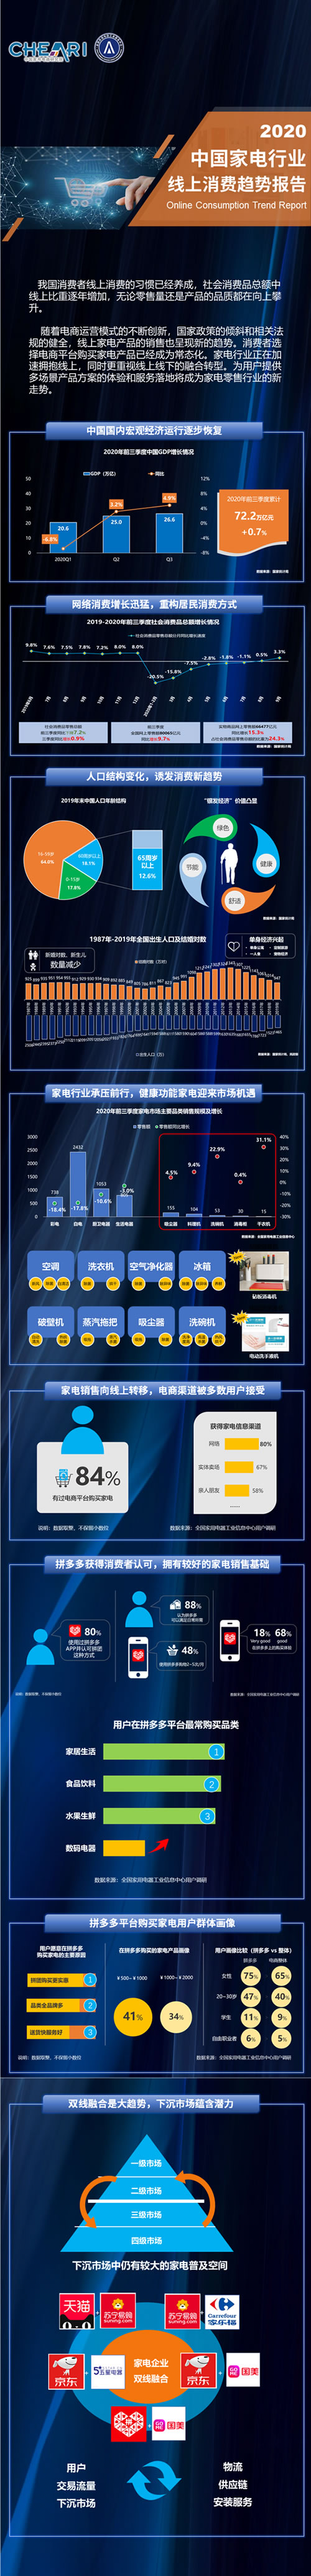 2020年中国家电行业线上消费趋势报告.jpg